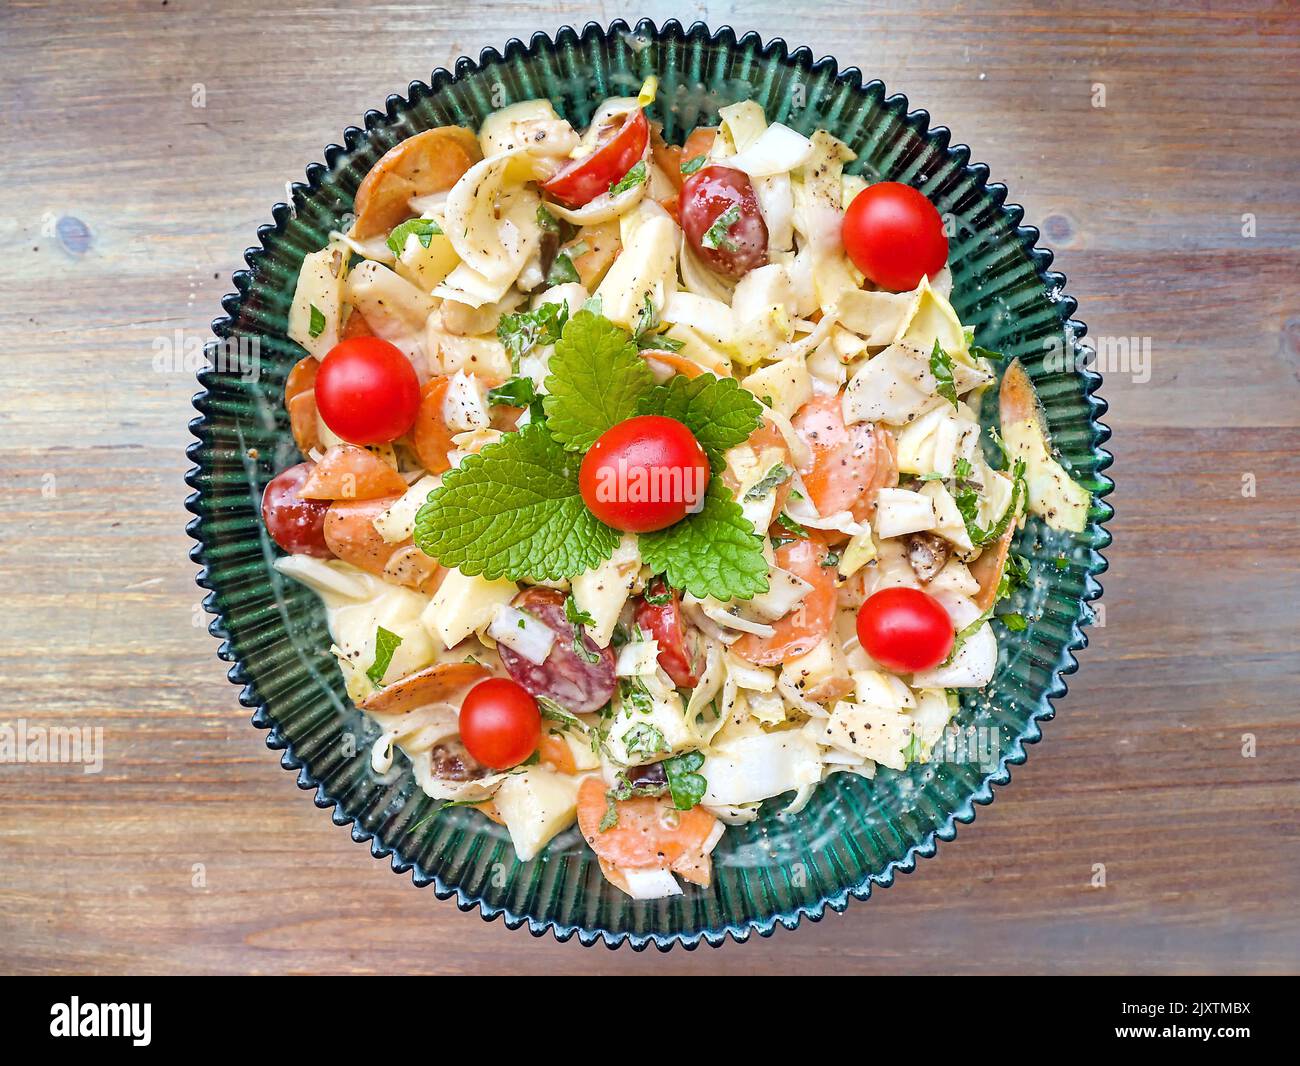 Salat aus Chicorée-Stücken mit Äpfeln, Kirschtomaten und in Scheiben geschnittenen Karotten, garniert mit Zitronenmelisse und Tomaten. Draufsicht, dunkelgrüne Glasplatte mit Stockfoto